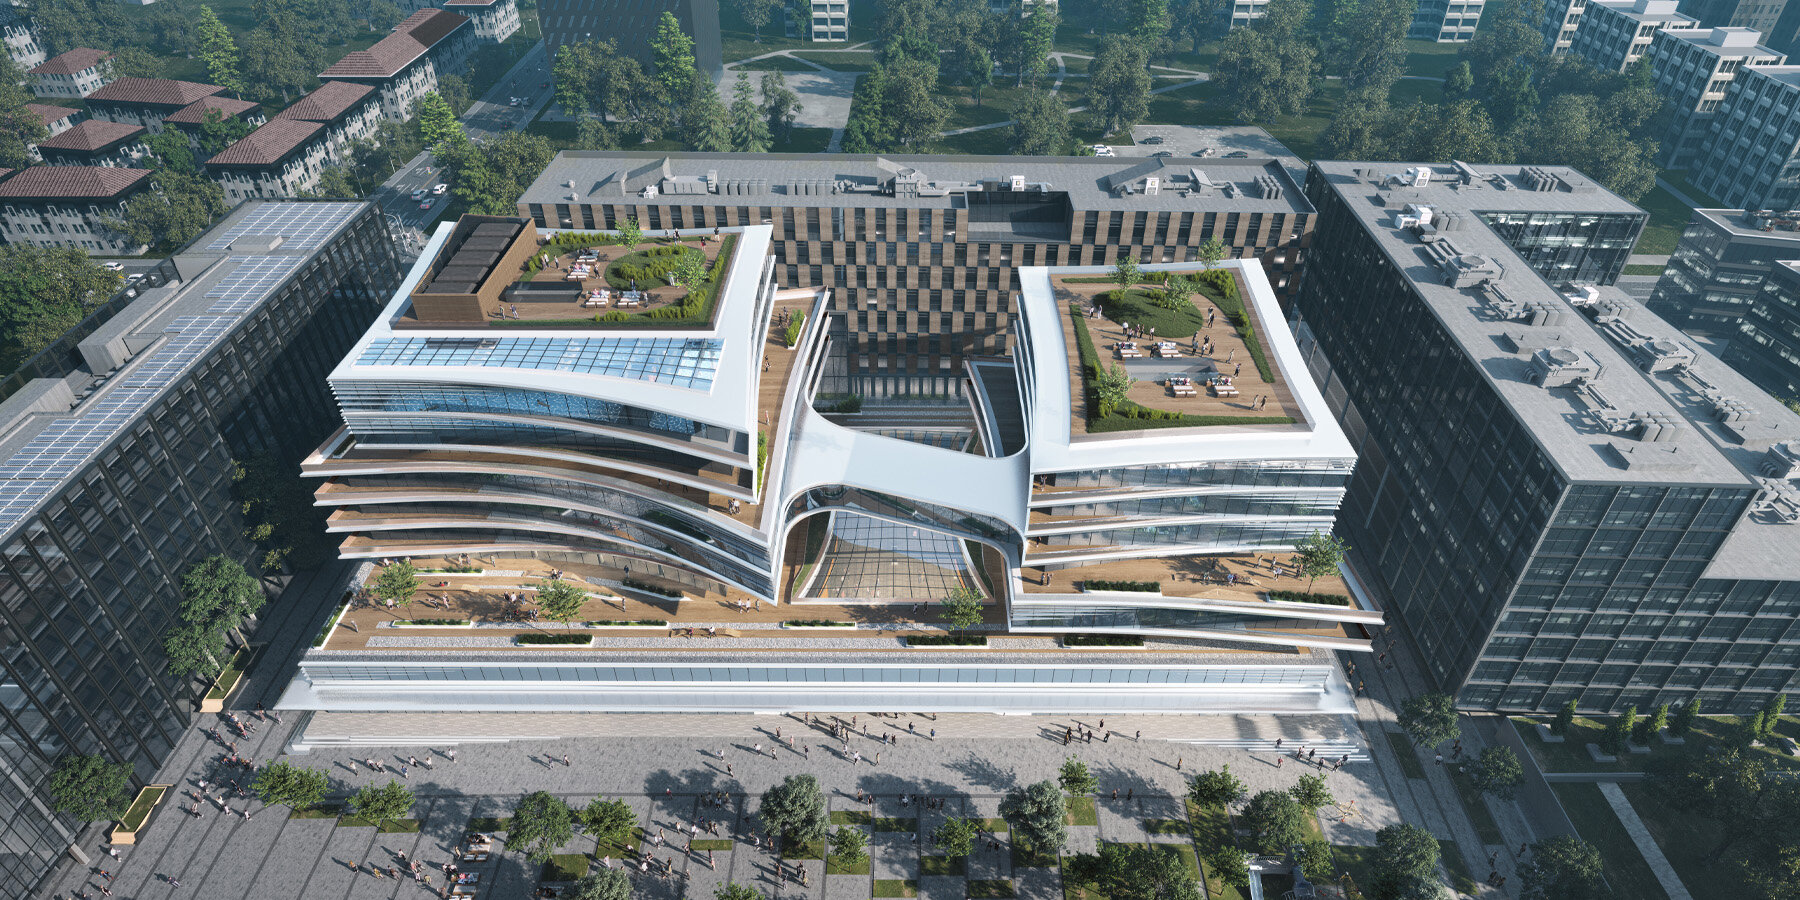 Zaha Hadid architektų centrinis stadionas Vilniuje, Lietuva